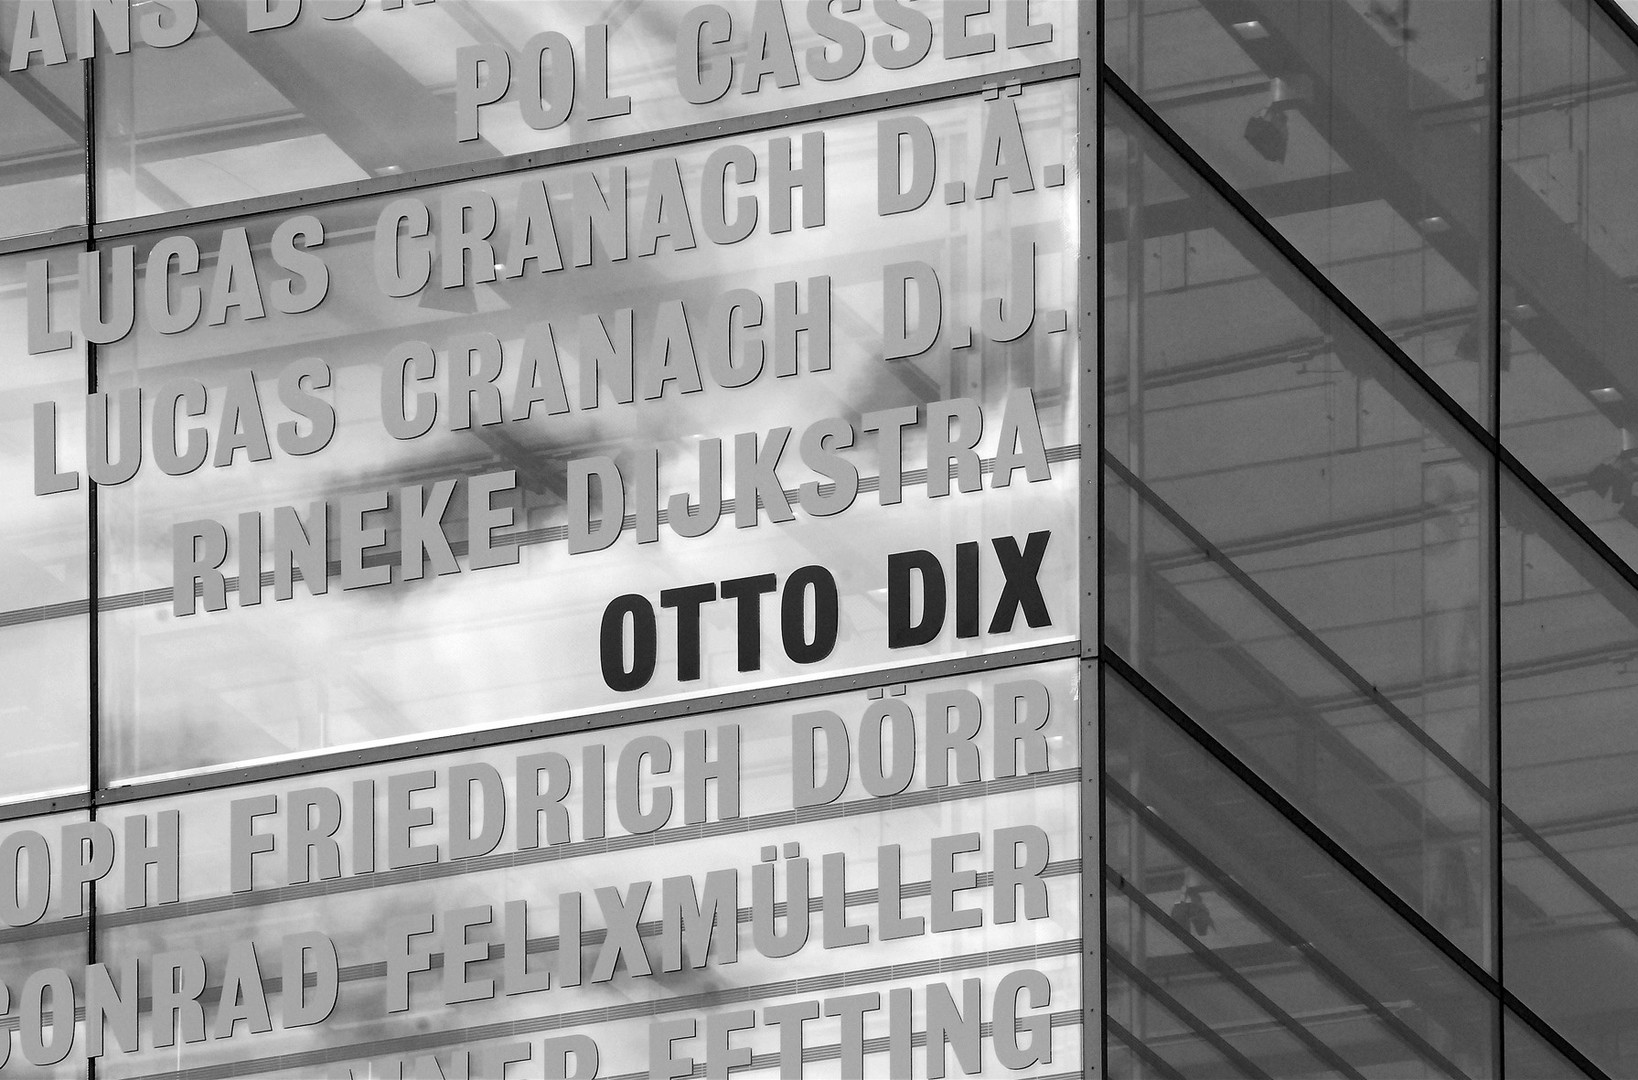 STUTTGART: Otto Dix